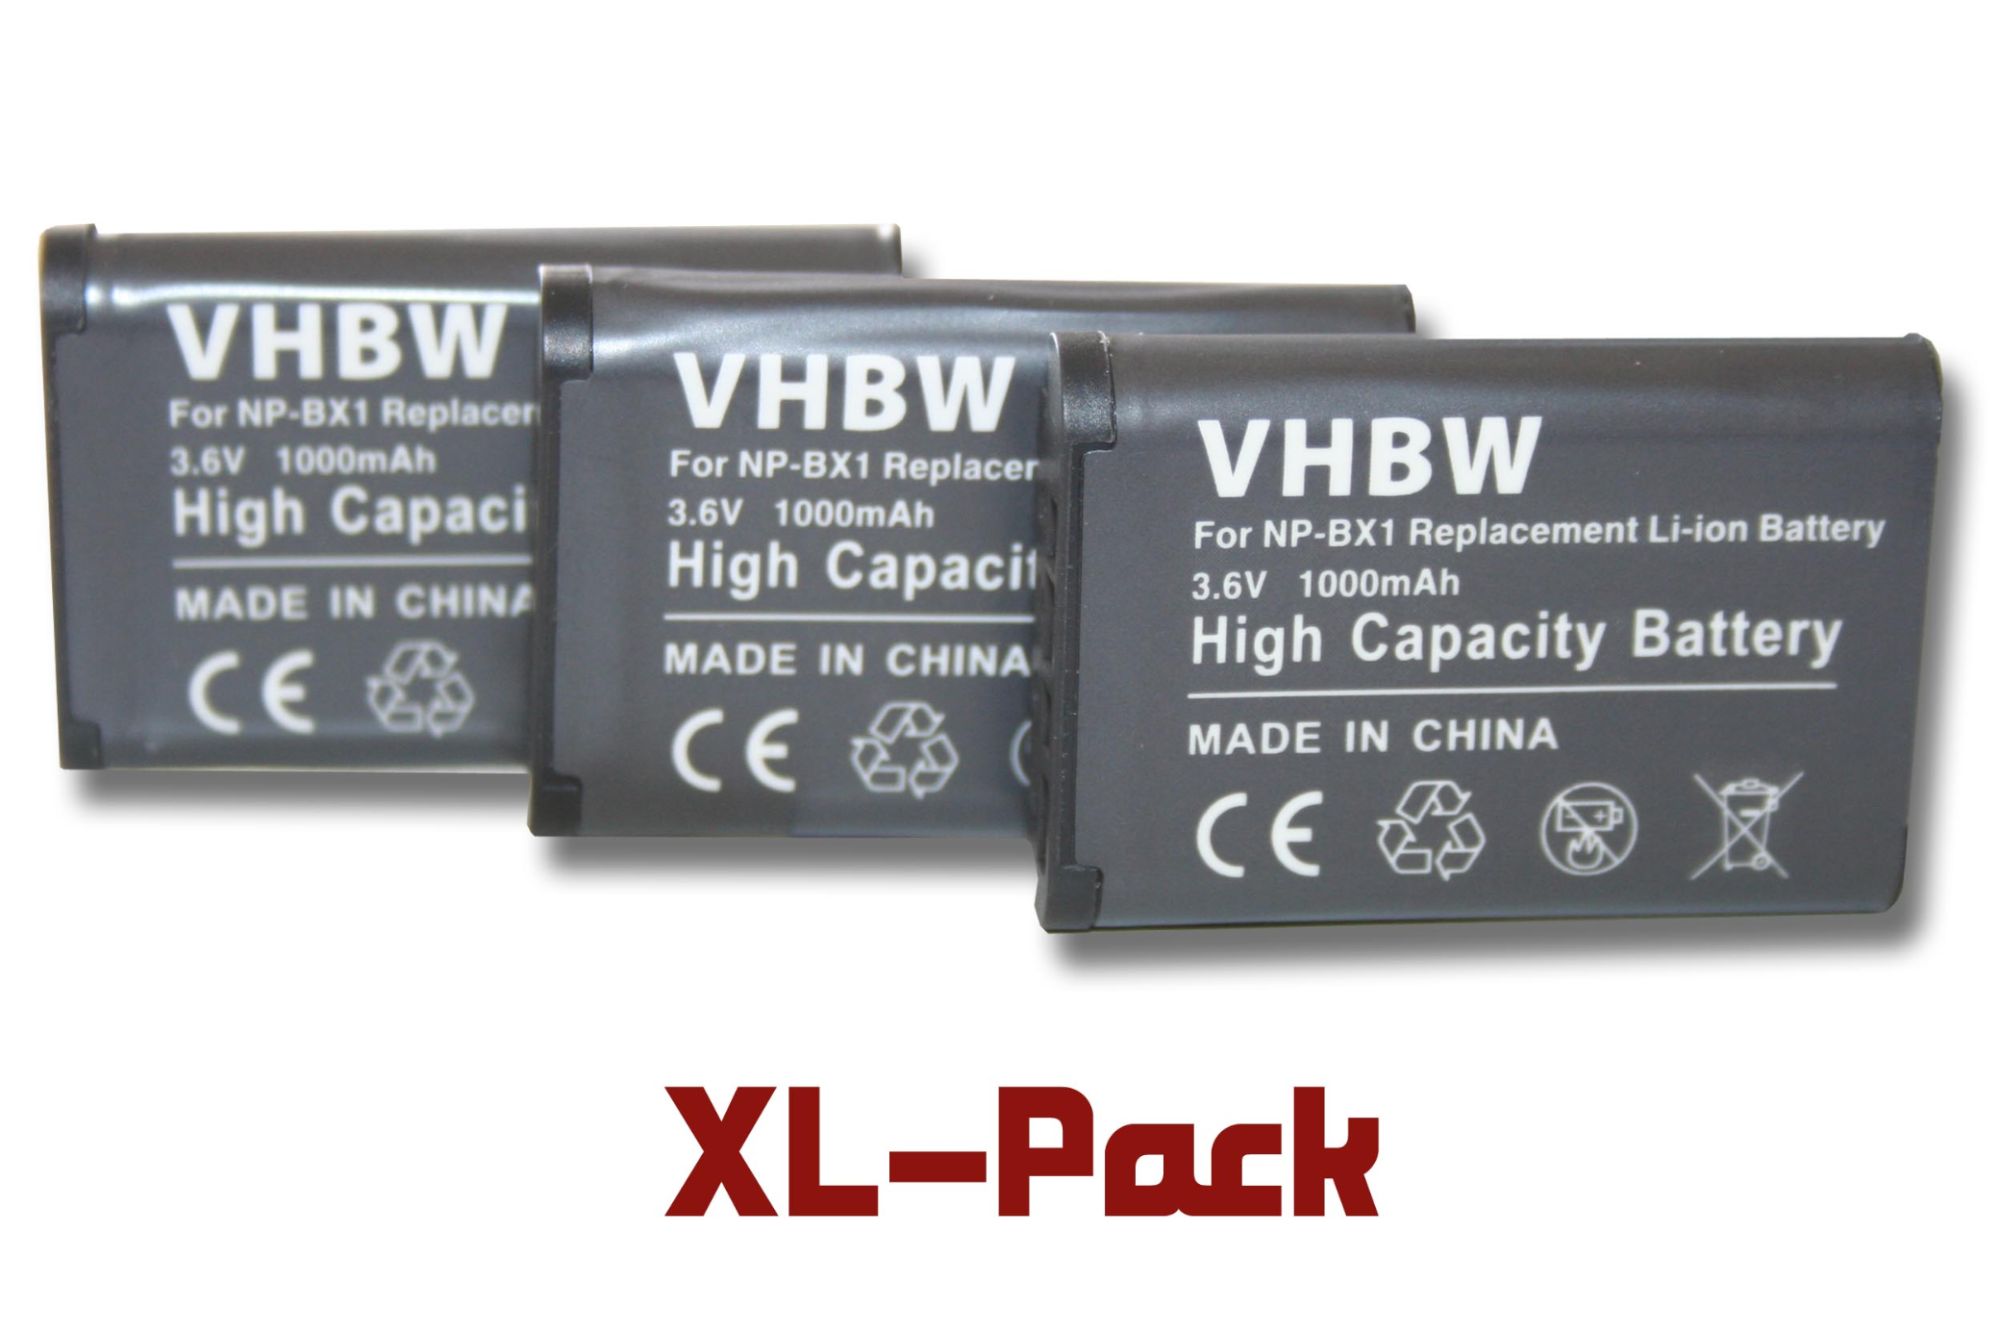 3 x vhbw batterie Set 1000mAh pour caméra Sony Actioncam FDR-X1000V, FDR-X1000VR comme NP-BX1